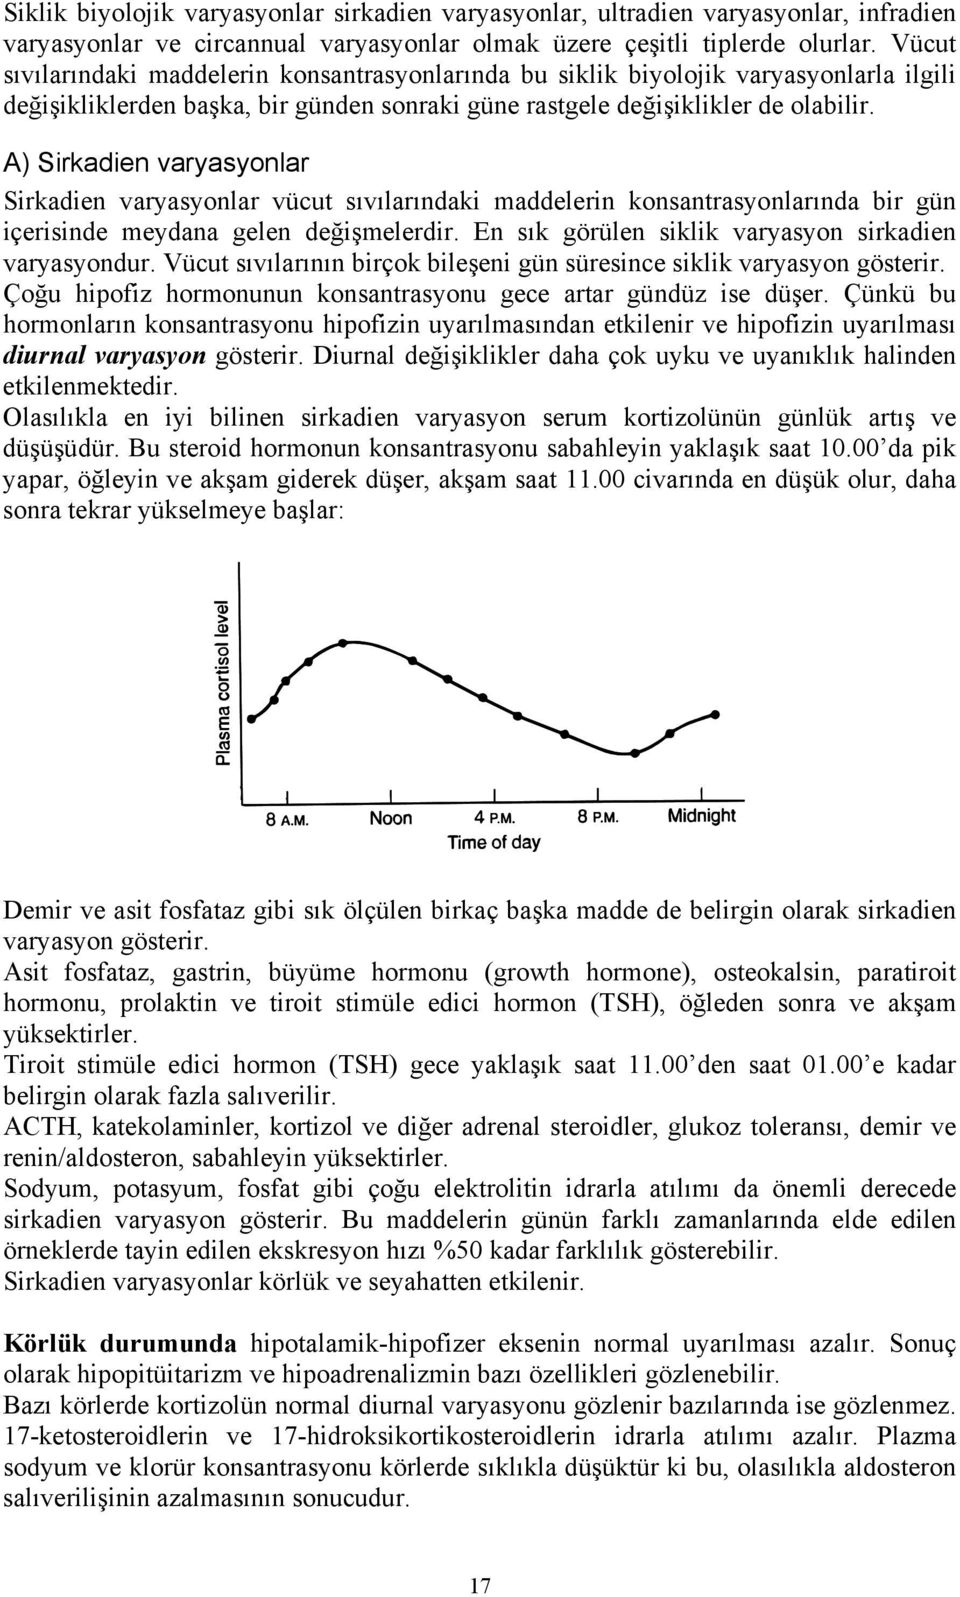 A) Sirkadien varyasyonlar Sirkadien varyasyonlar vücut sıvılarındaki maddelerin konsantrasyonlarında bir gün içerisinde meydana gelen değişmelerdir.